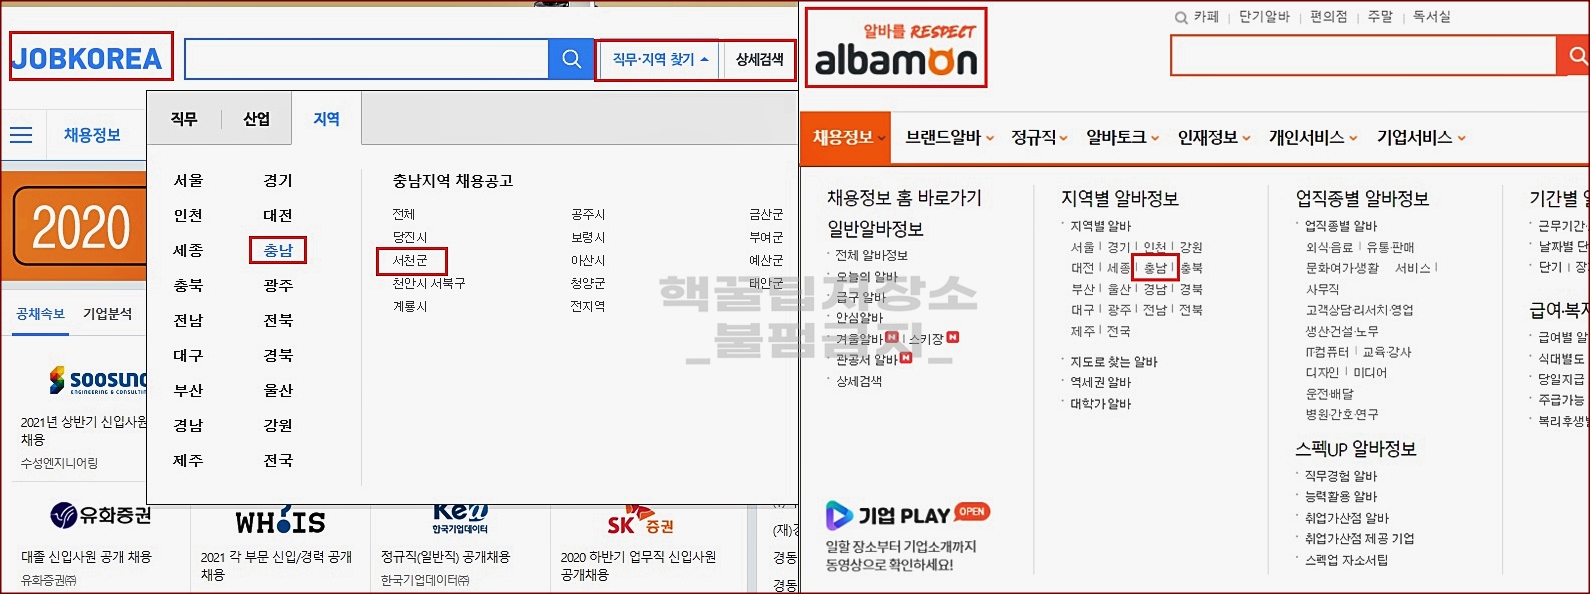 서천군 취업 사이트 종류